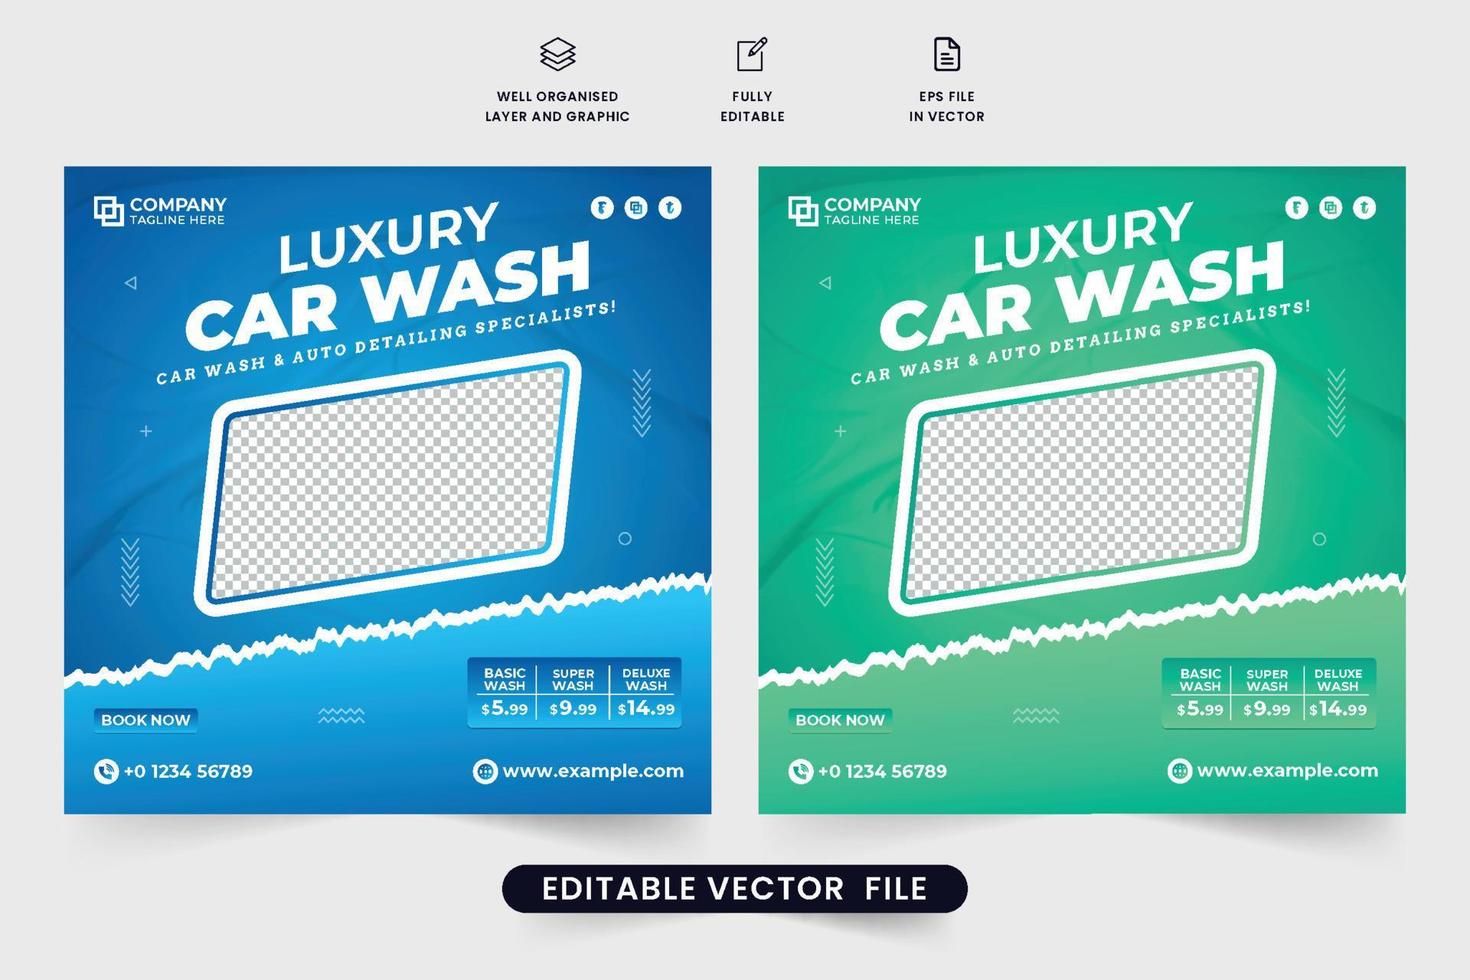 servicio creativo de lavado y mantenimiento de autos vector de publicación en redes sociales. diseño de banner web promocional de negocios de limpieza de automóviles con colores verde y azul. plantilla de póster de lavado de vehículos para marketing